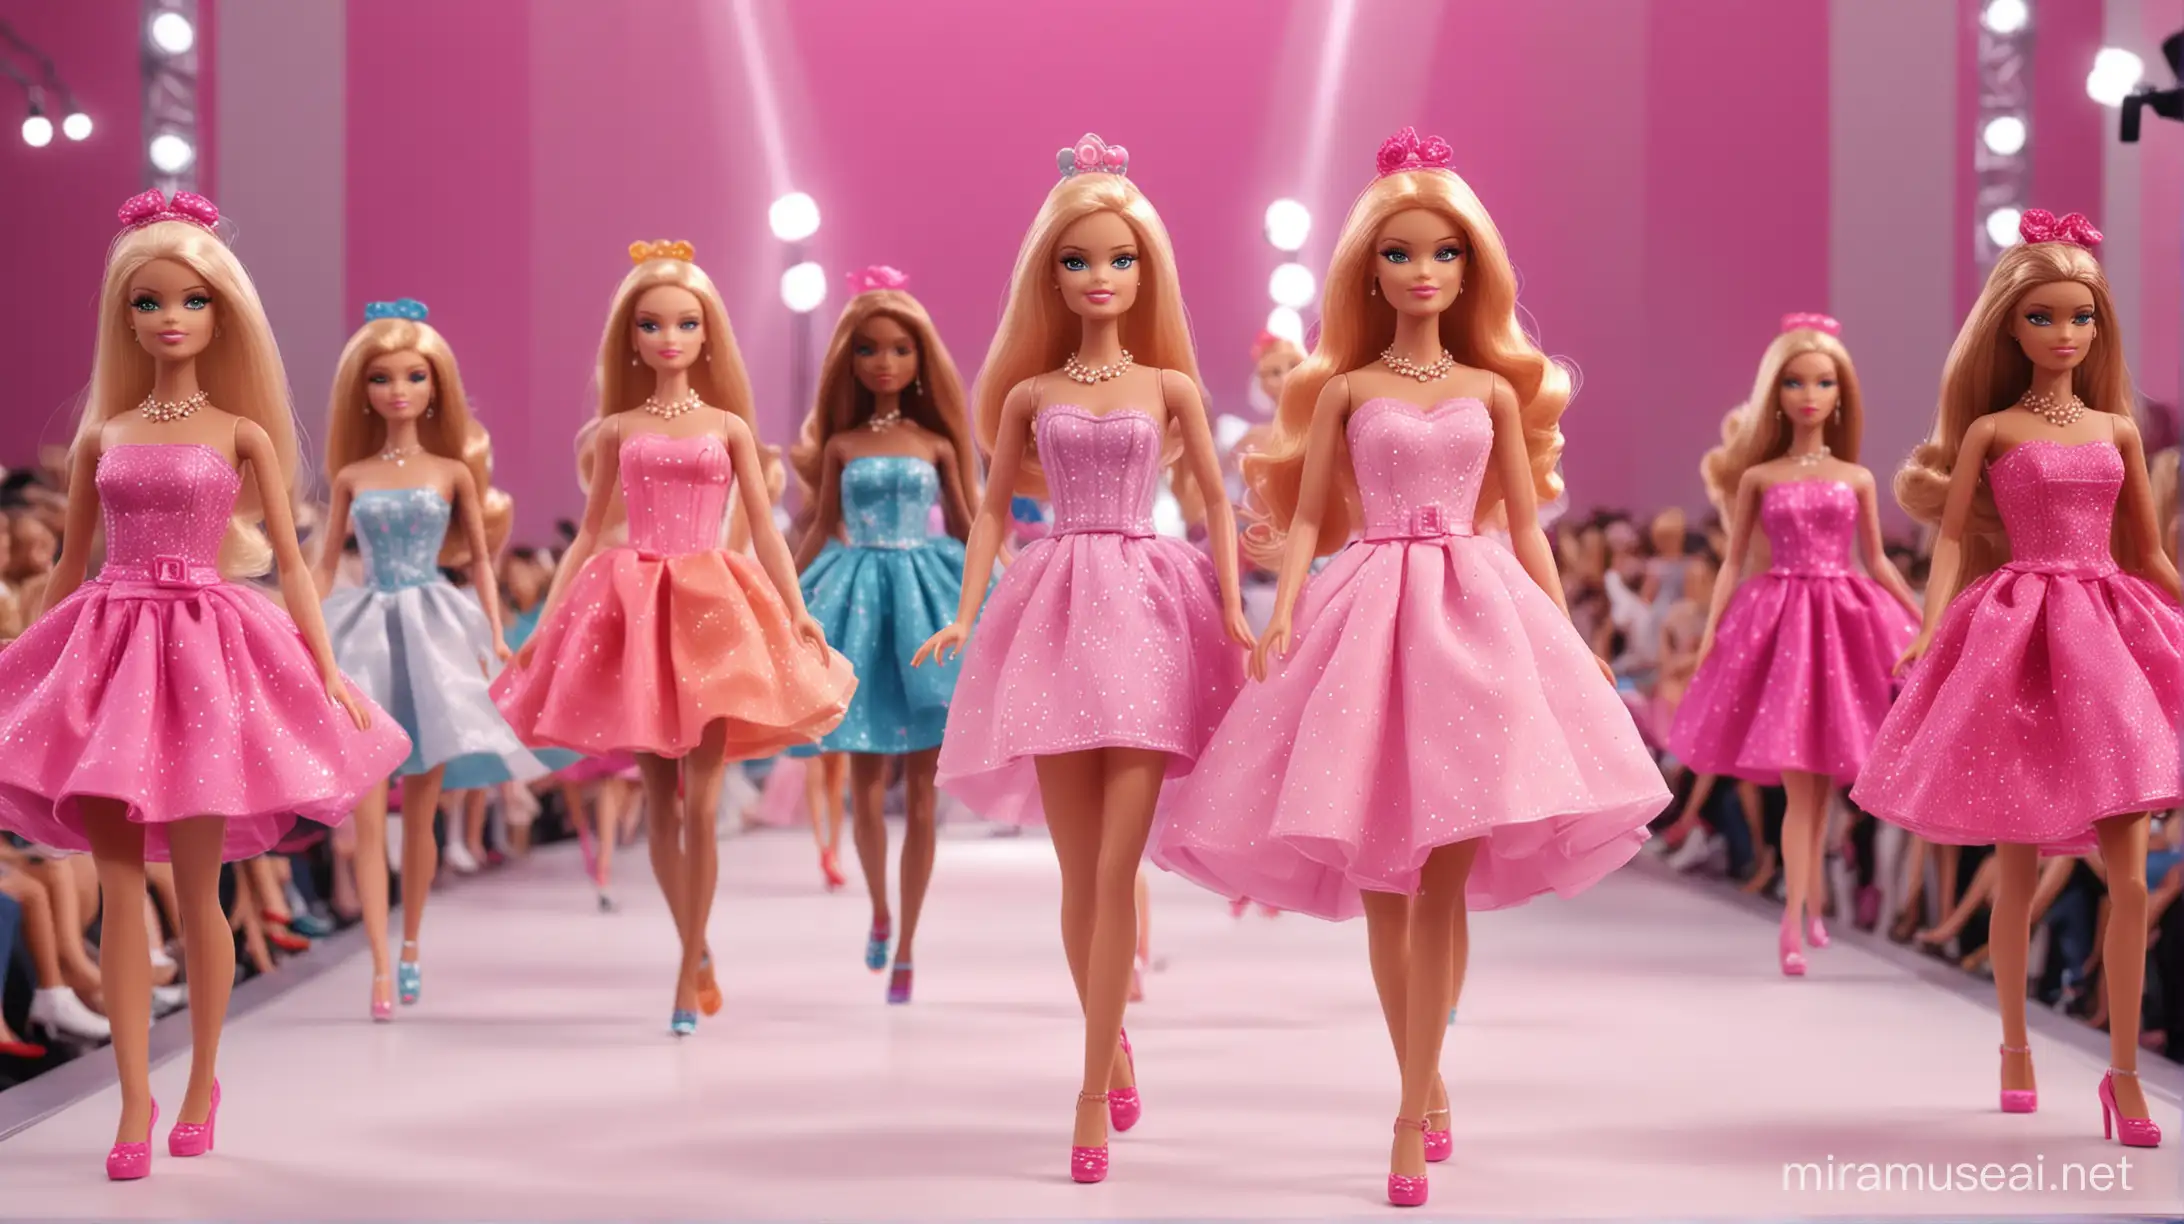 muñecas barbie desfilando en un desfile de modas por la pasarela con los peores vestidos, muy alta calidad, animacion estilo roblox